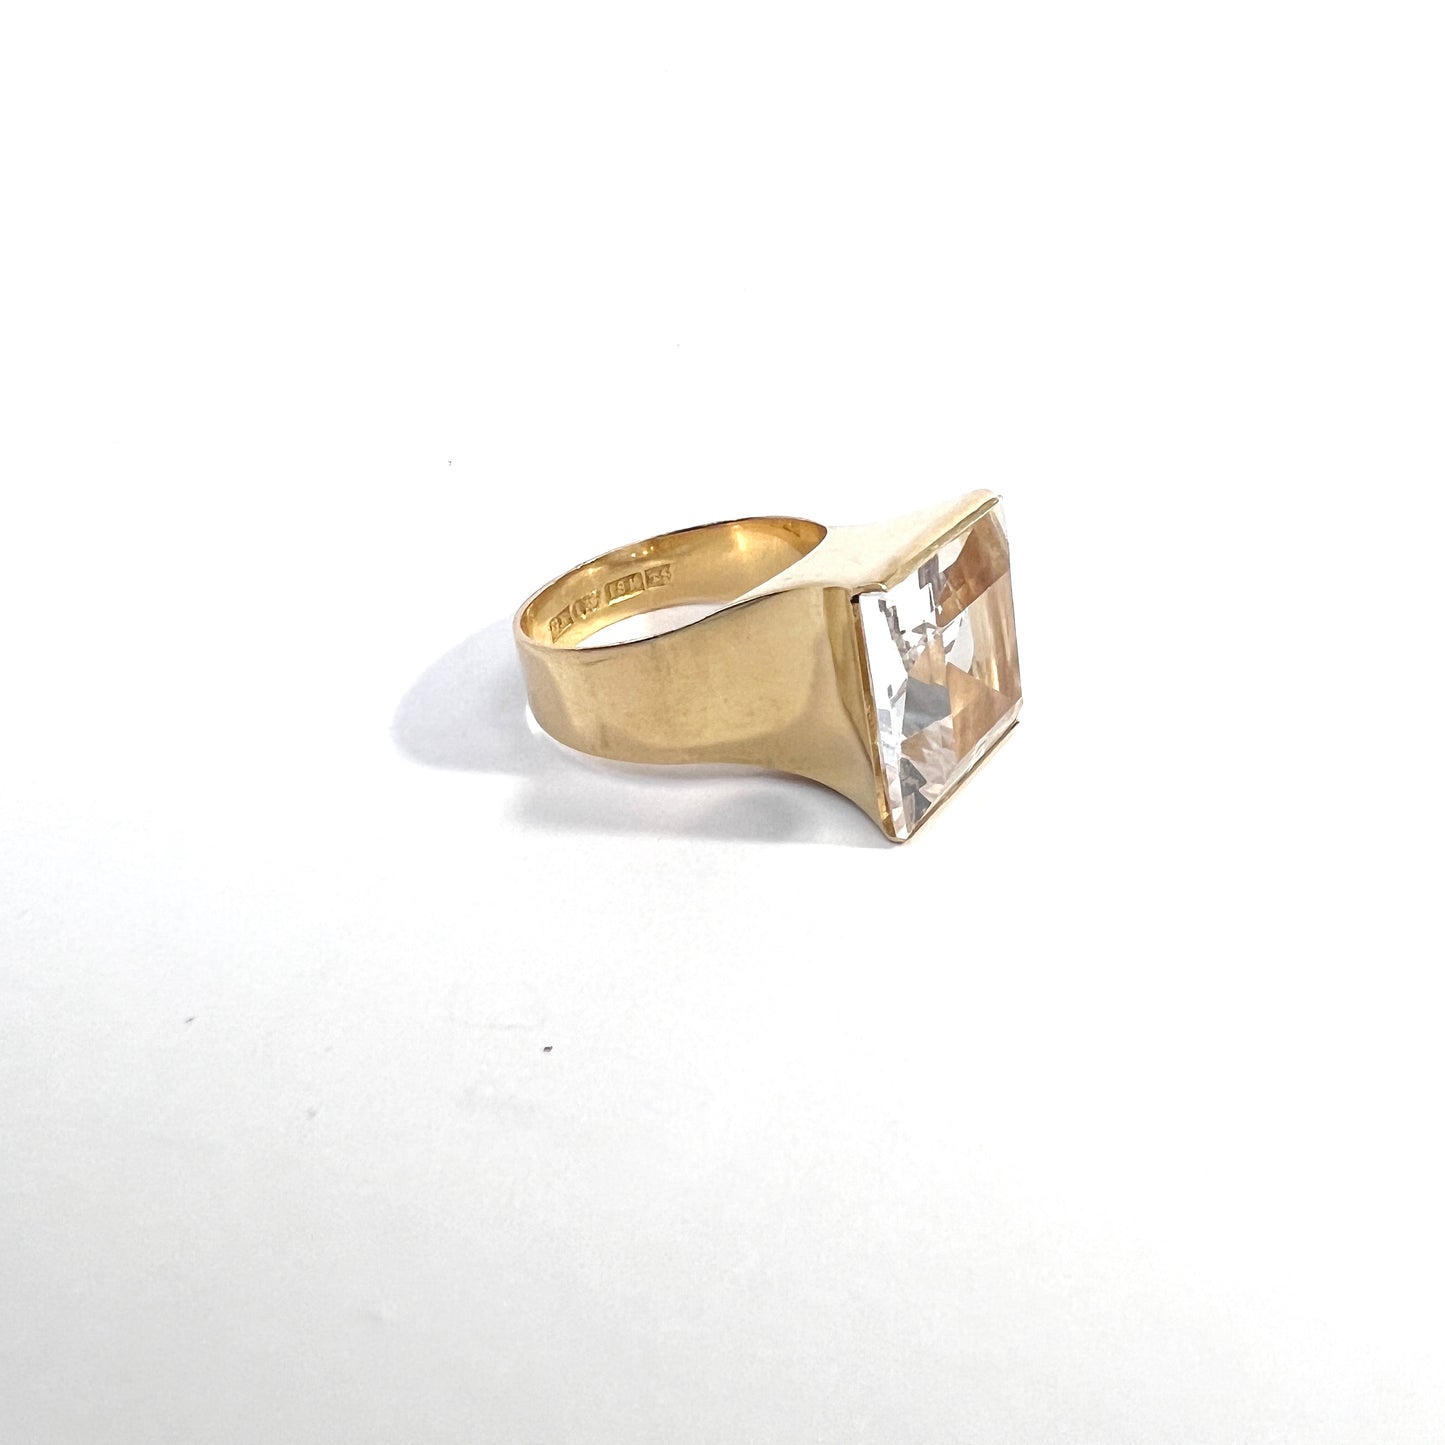 Kaplan, Sweden 1969. Vintage Modernist 18k Gold Rock Crystal Ring